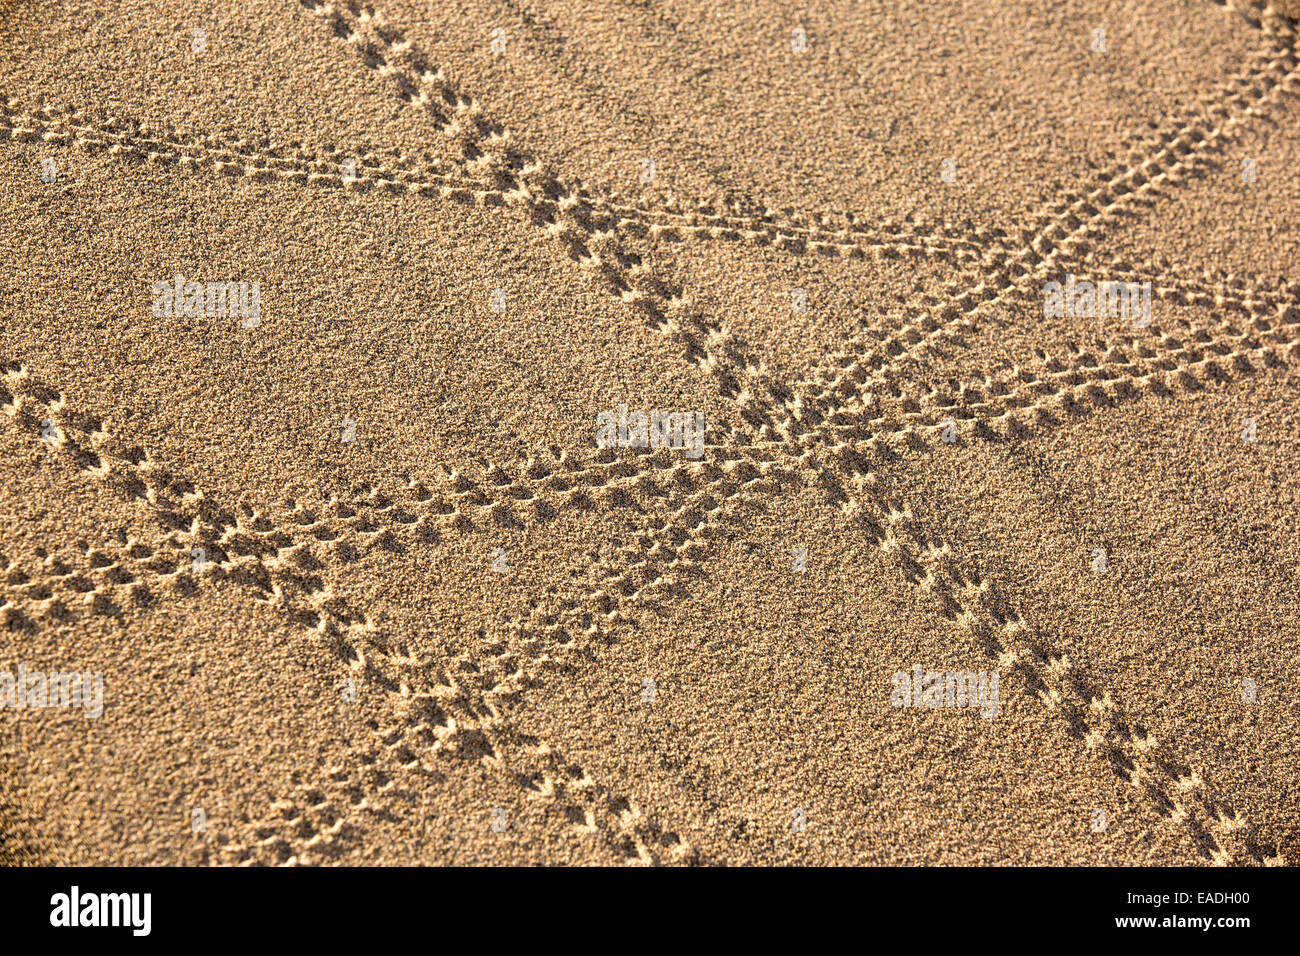 Sur les sentiers de lézard Mesquite flat dunes dans la vallée de la mort qui est le plus faible, le plus chaud, le plus sec aux Etats-Unis, avec une pluviométrie annuelle moyenne d'environ 2 pouces, certaines années, il ne reçoit pas de pluie du tout. Banque D'Images